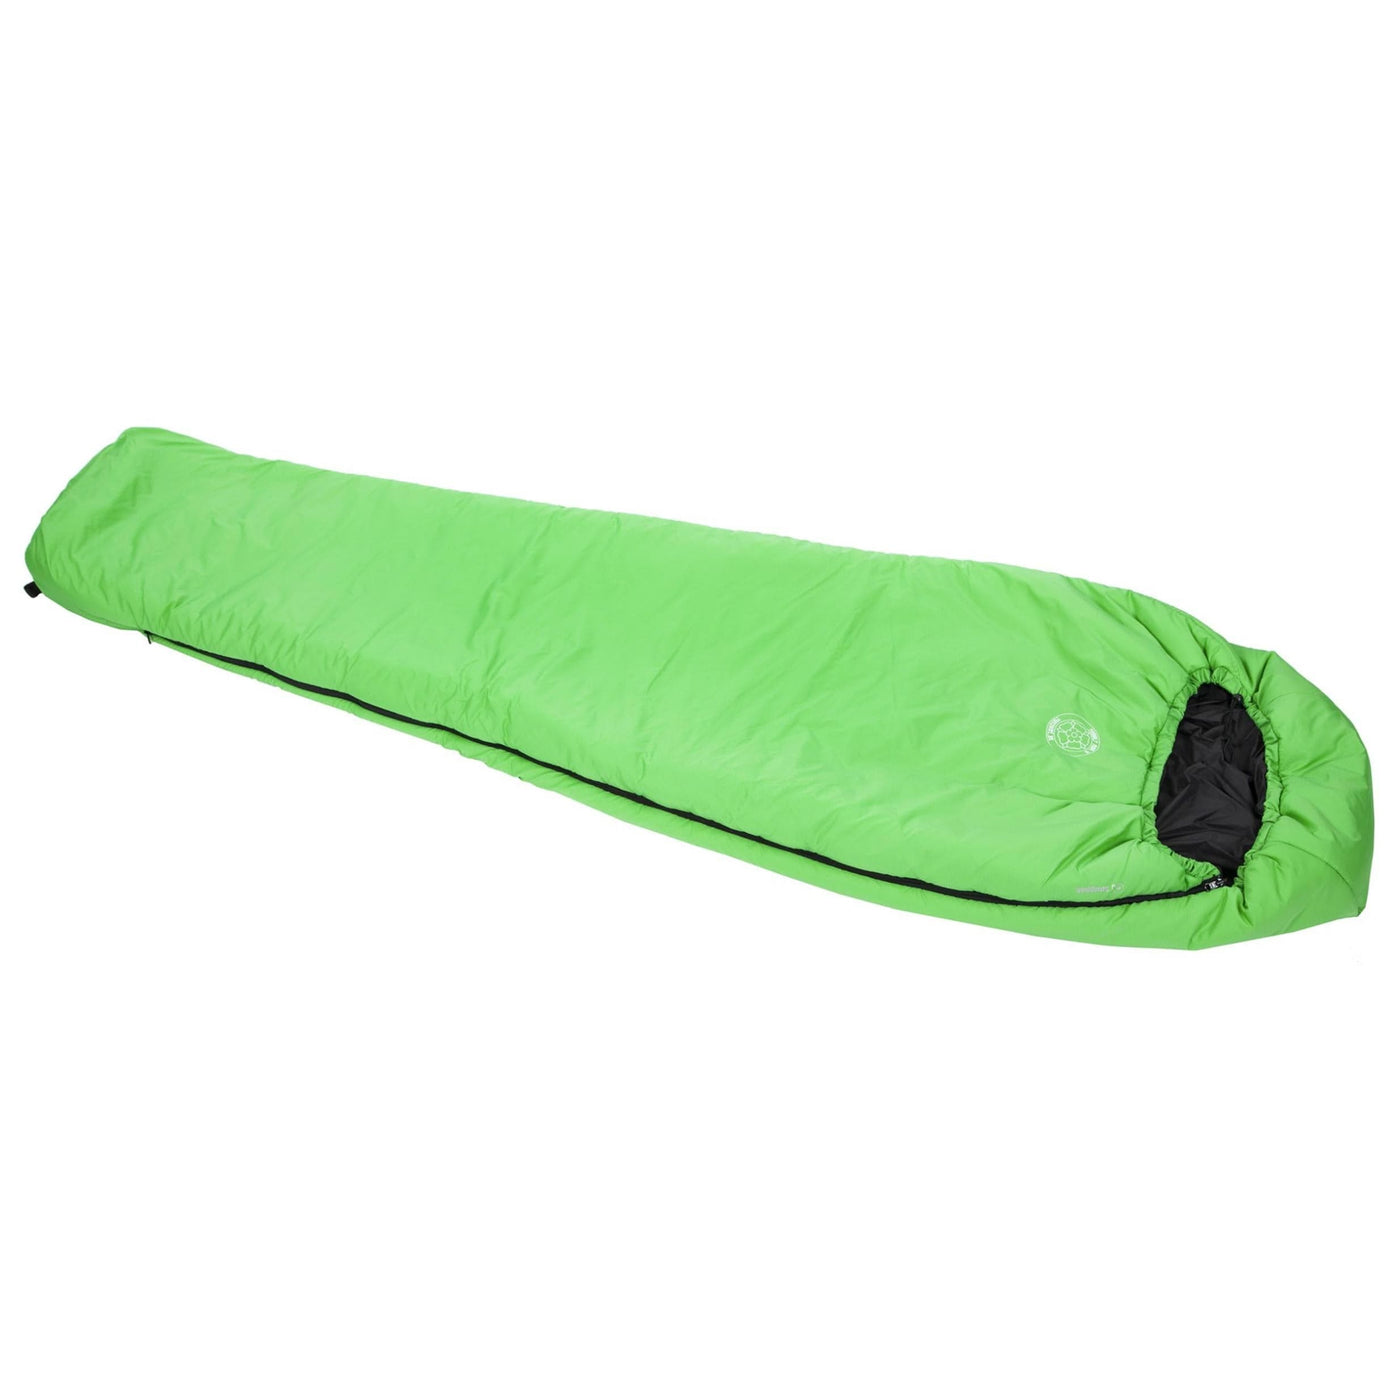 Snugpak Snugpak Softie 9 Equinox Sleeping Bag Green Zip Left Hand Camping And Outdoor